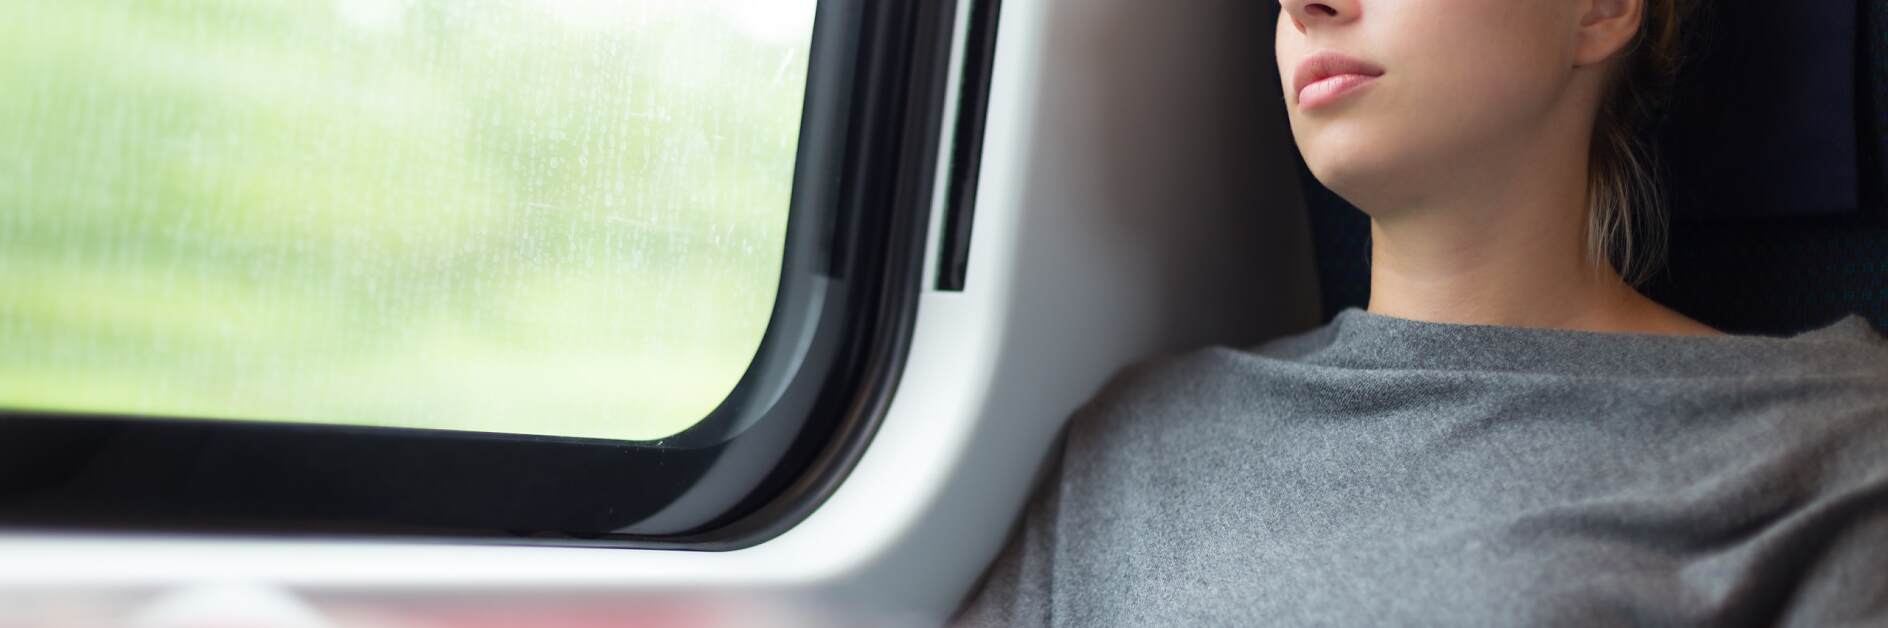 ผู้หญิงงีบหลับขณะเดินทางบนรถไฟ